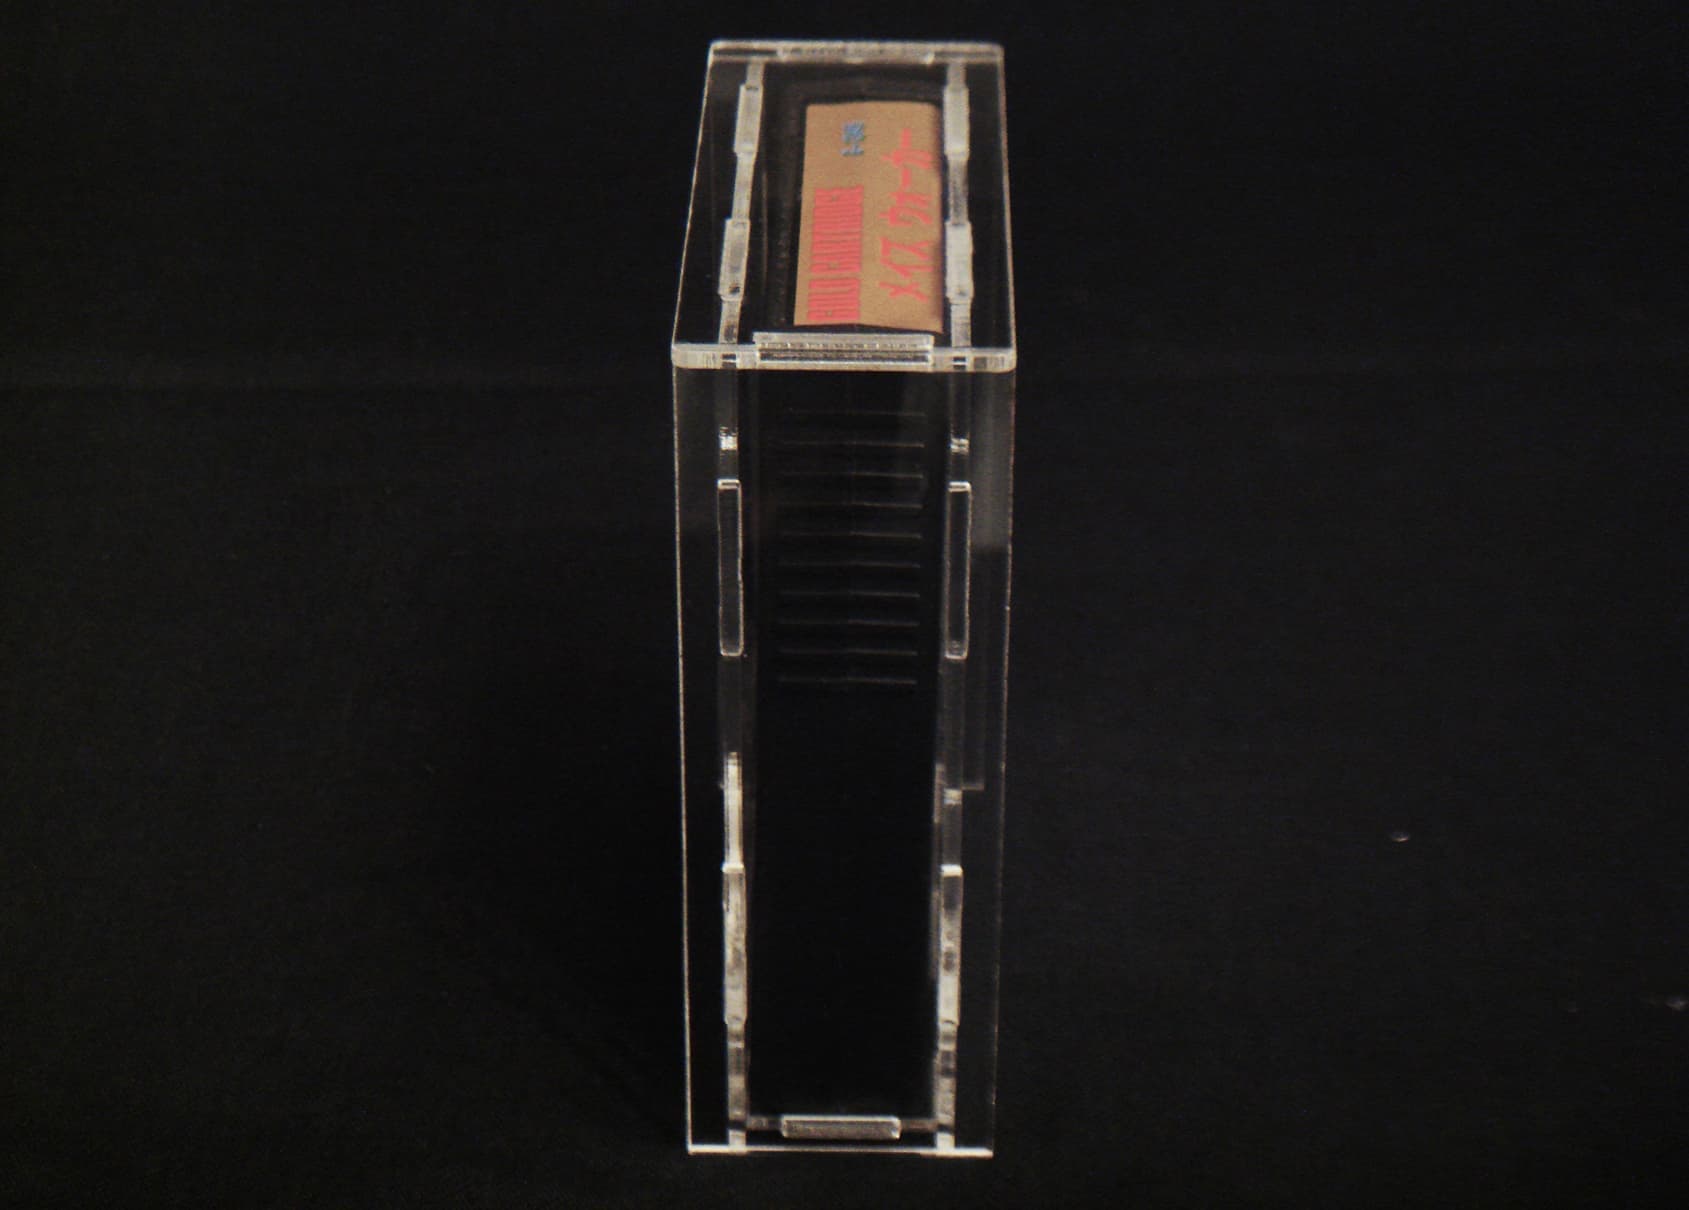 Cassette case for SEGA MARKⅢ